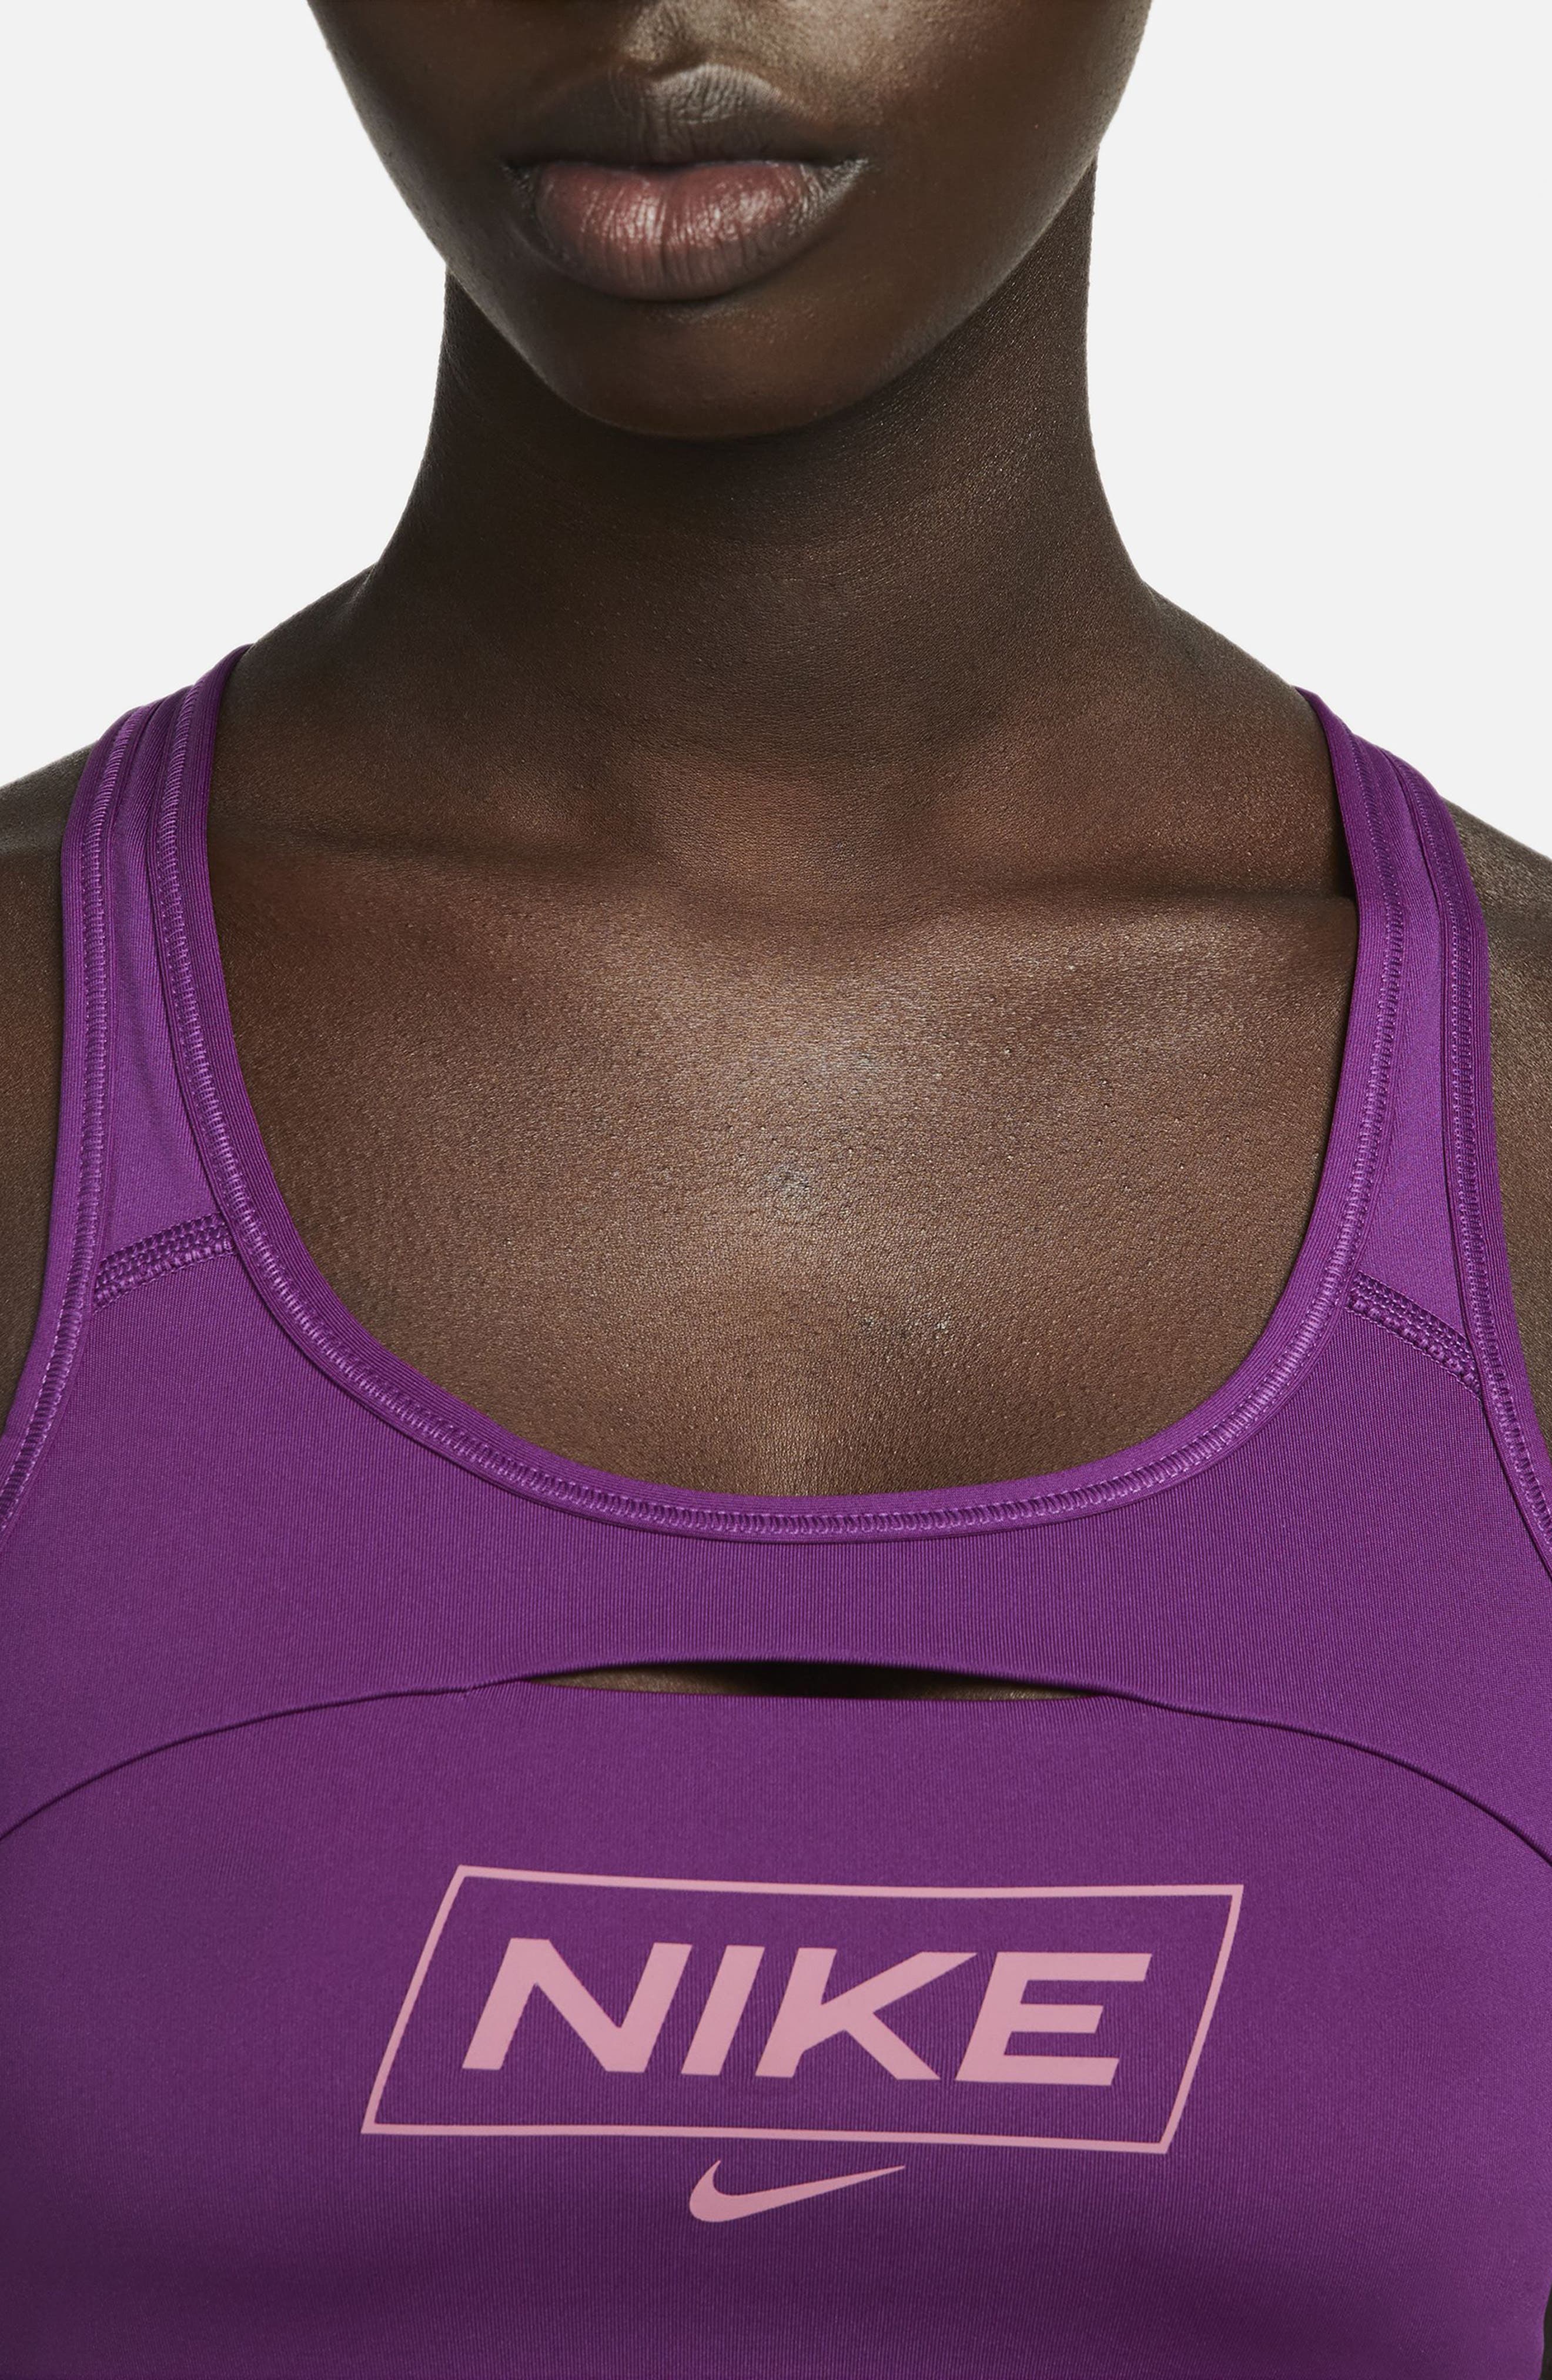 Nike Pro Dri-FIT Swoosh Sports Bra in Viotech/Cave Purple